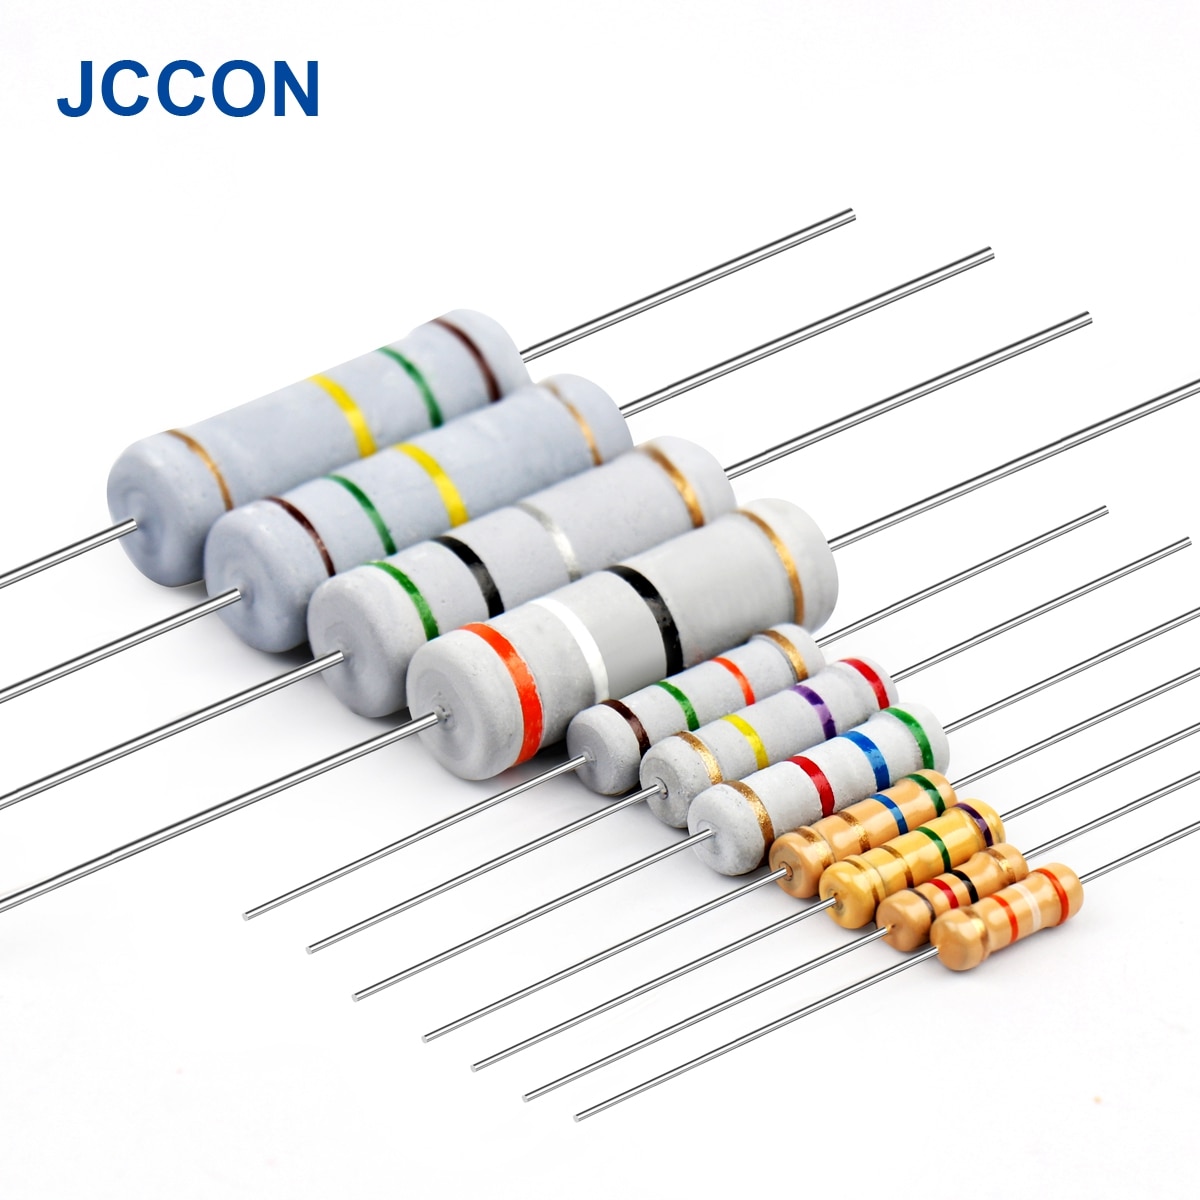 150pcs 3w 0.1~750r carbon film resistor assorted kit 30values x 5pcs=150pcs sample kit color ring resistance